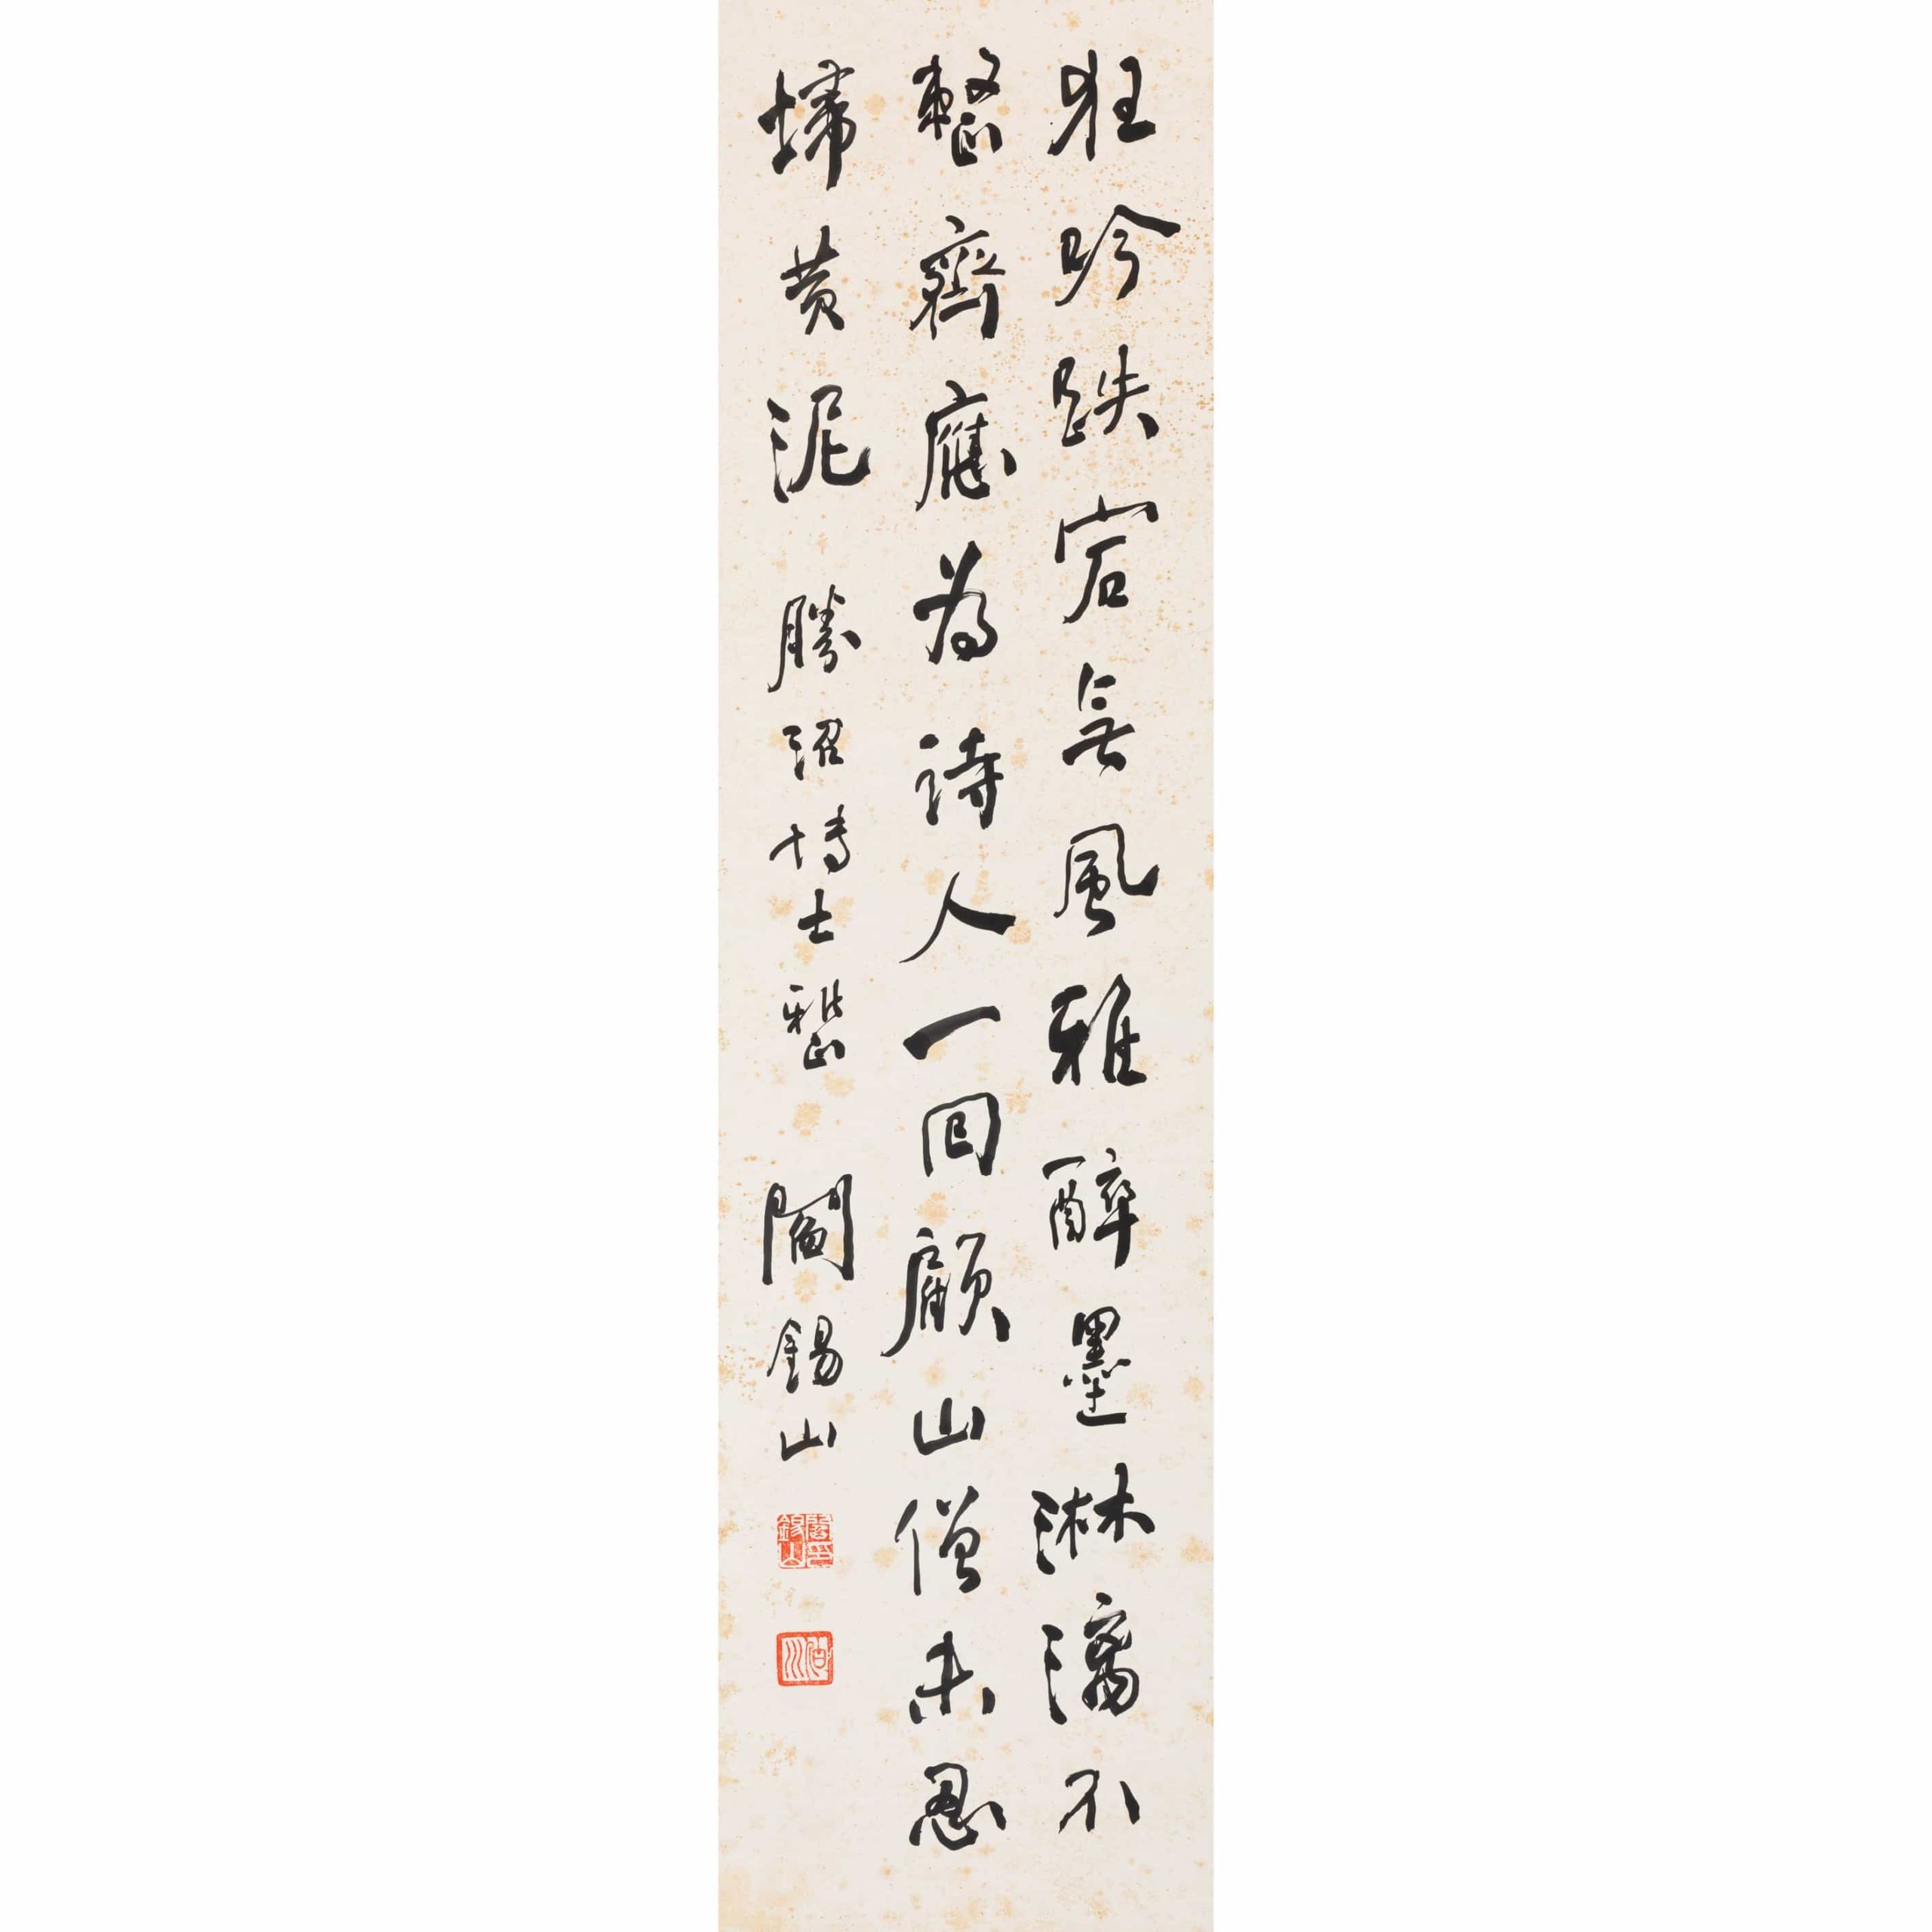 阎锡山行书“苏轼《和张子野见寄三绝句见题壁》”